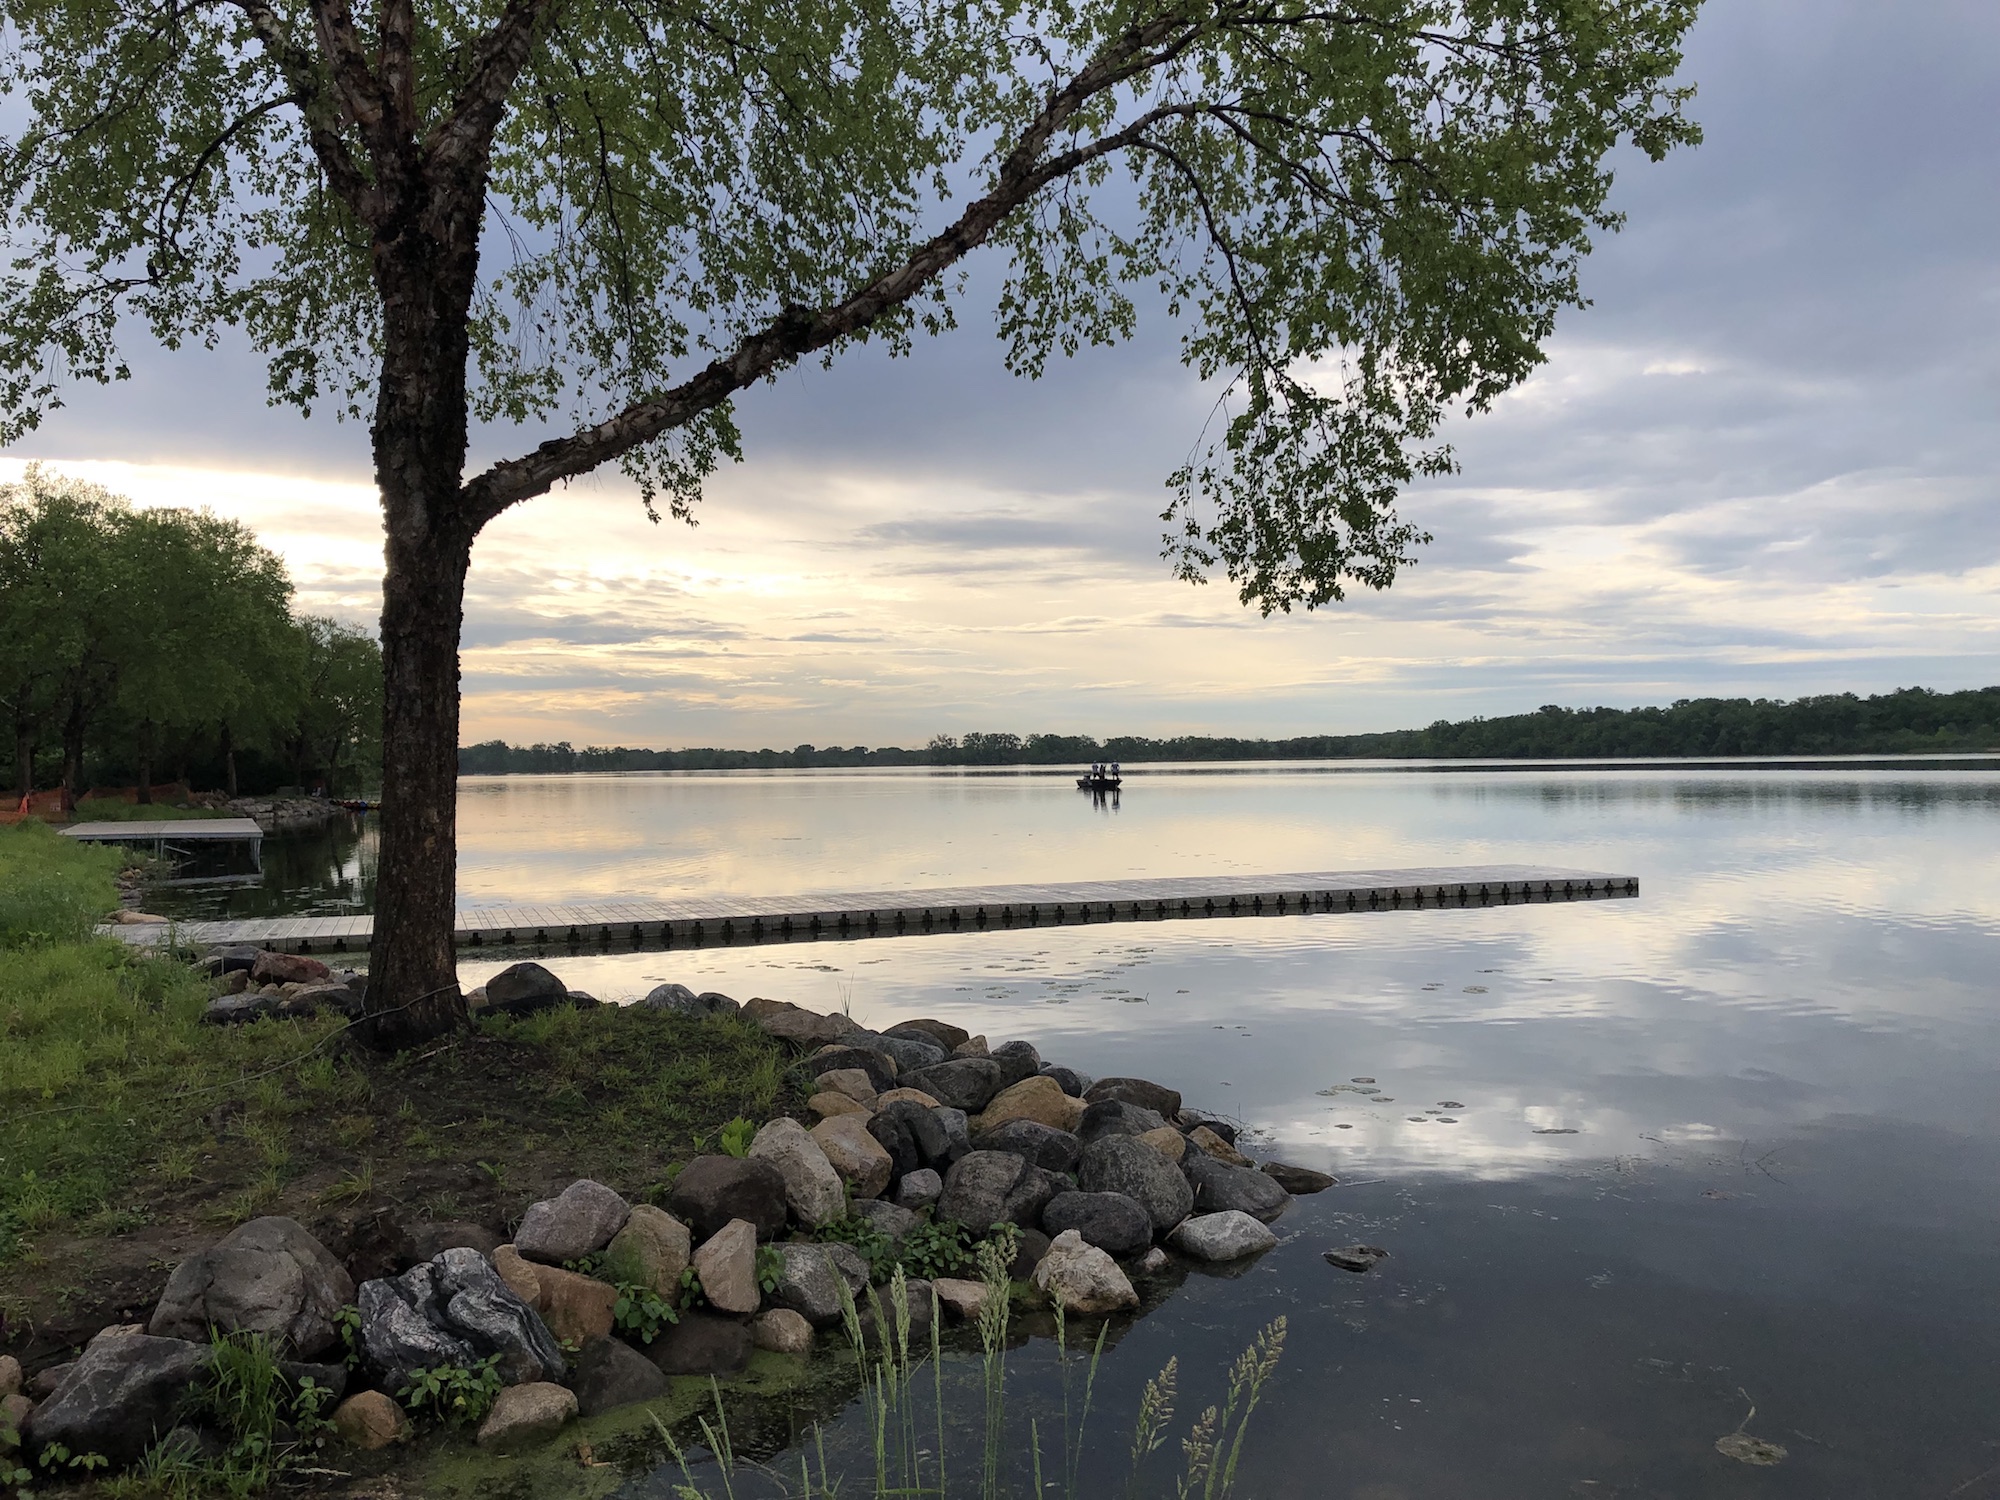 Lake Wingra on June 5, 2019.